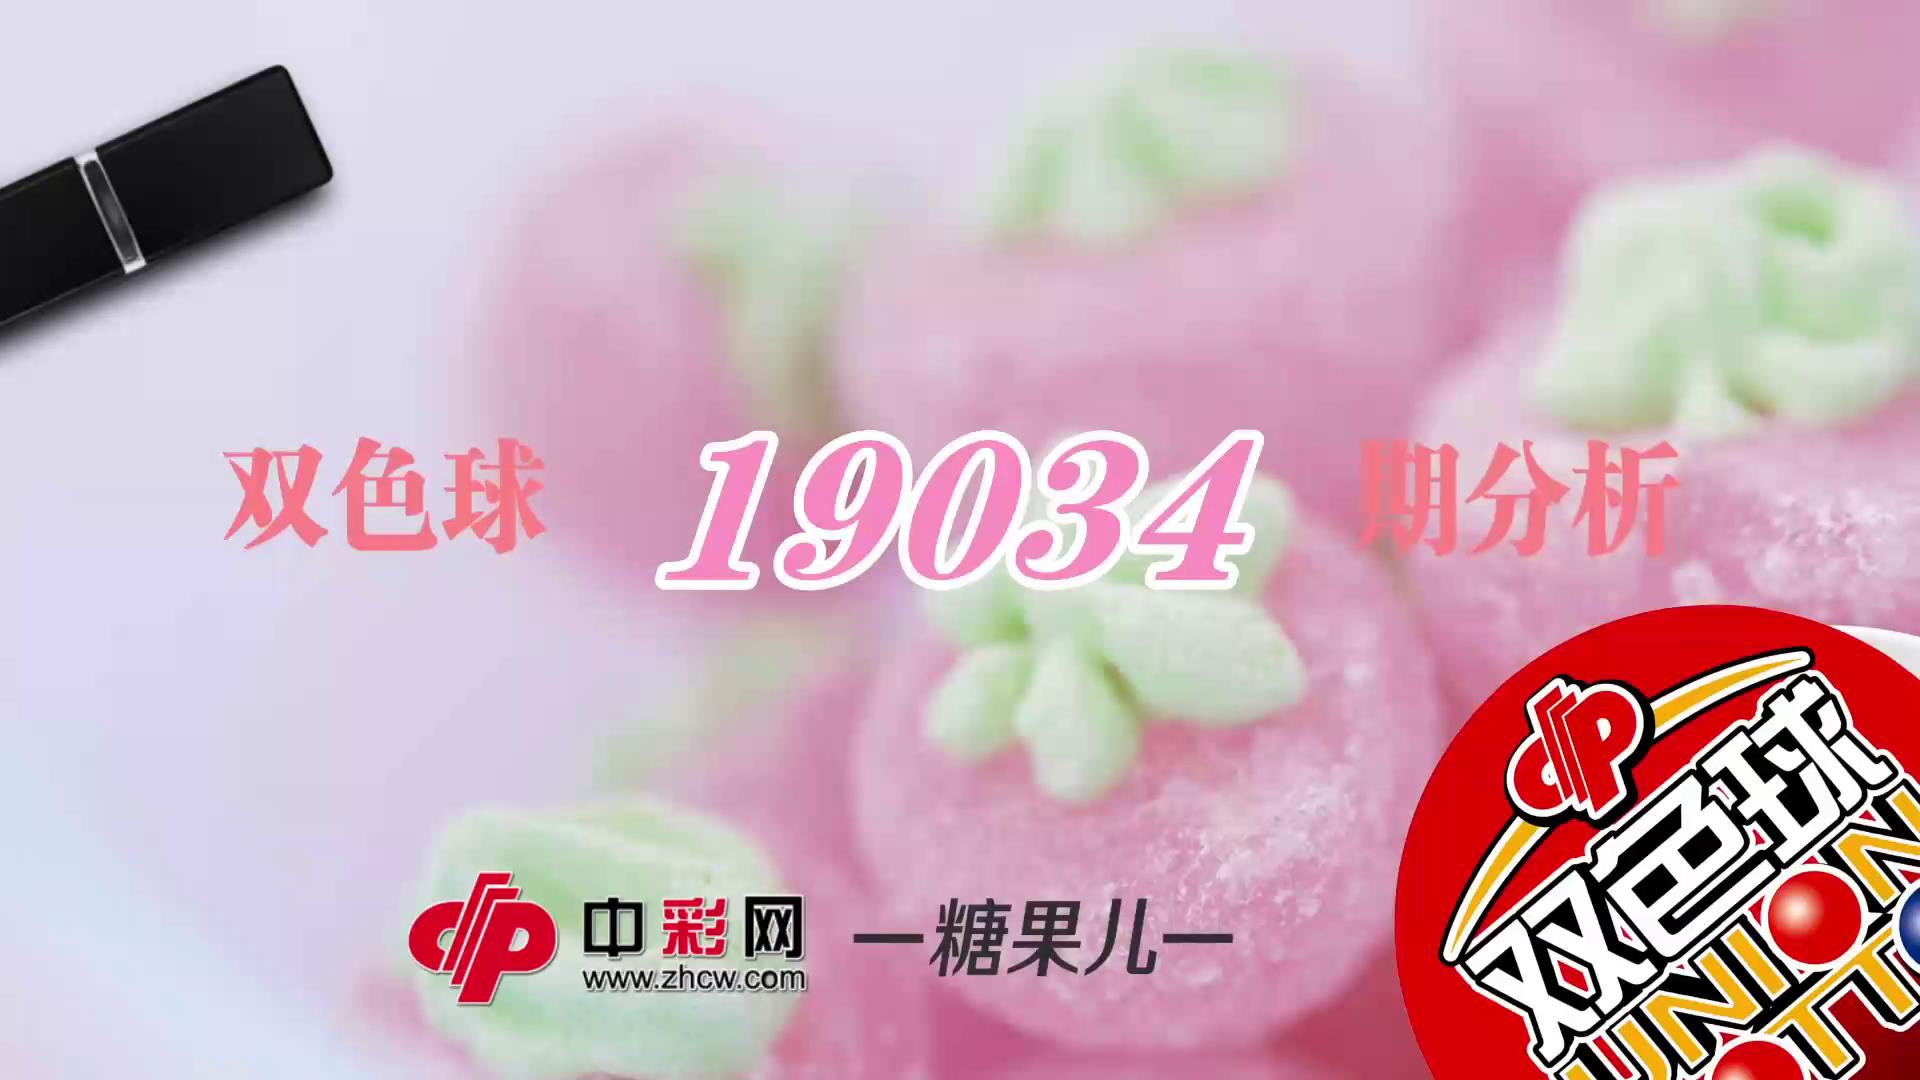 【中彩视频】糖果儿双色球第19034期